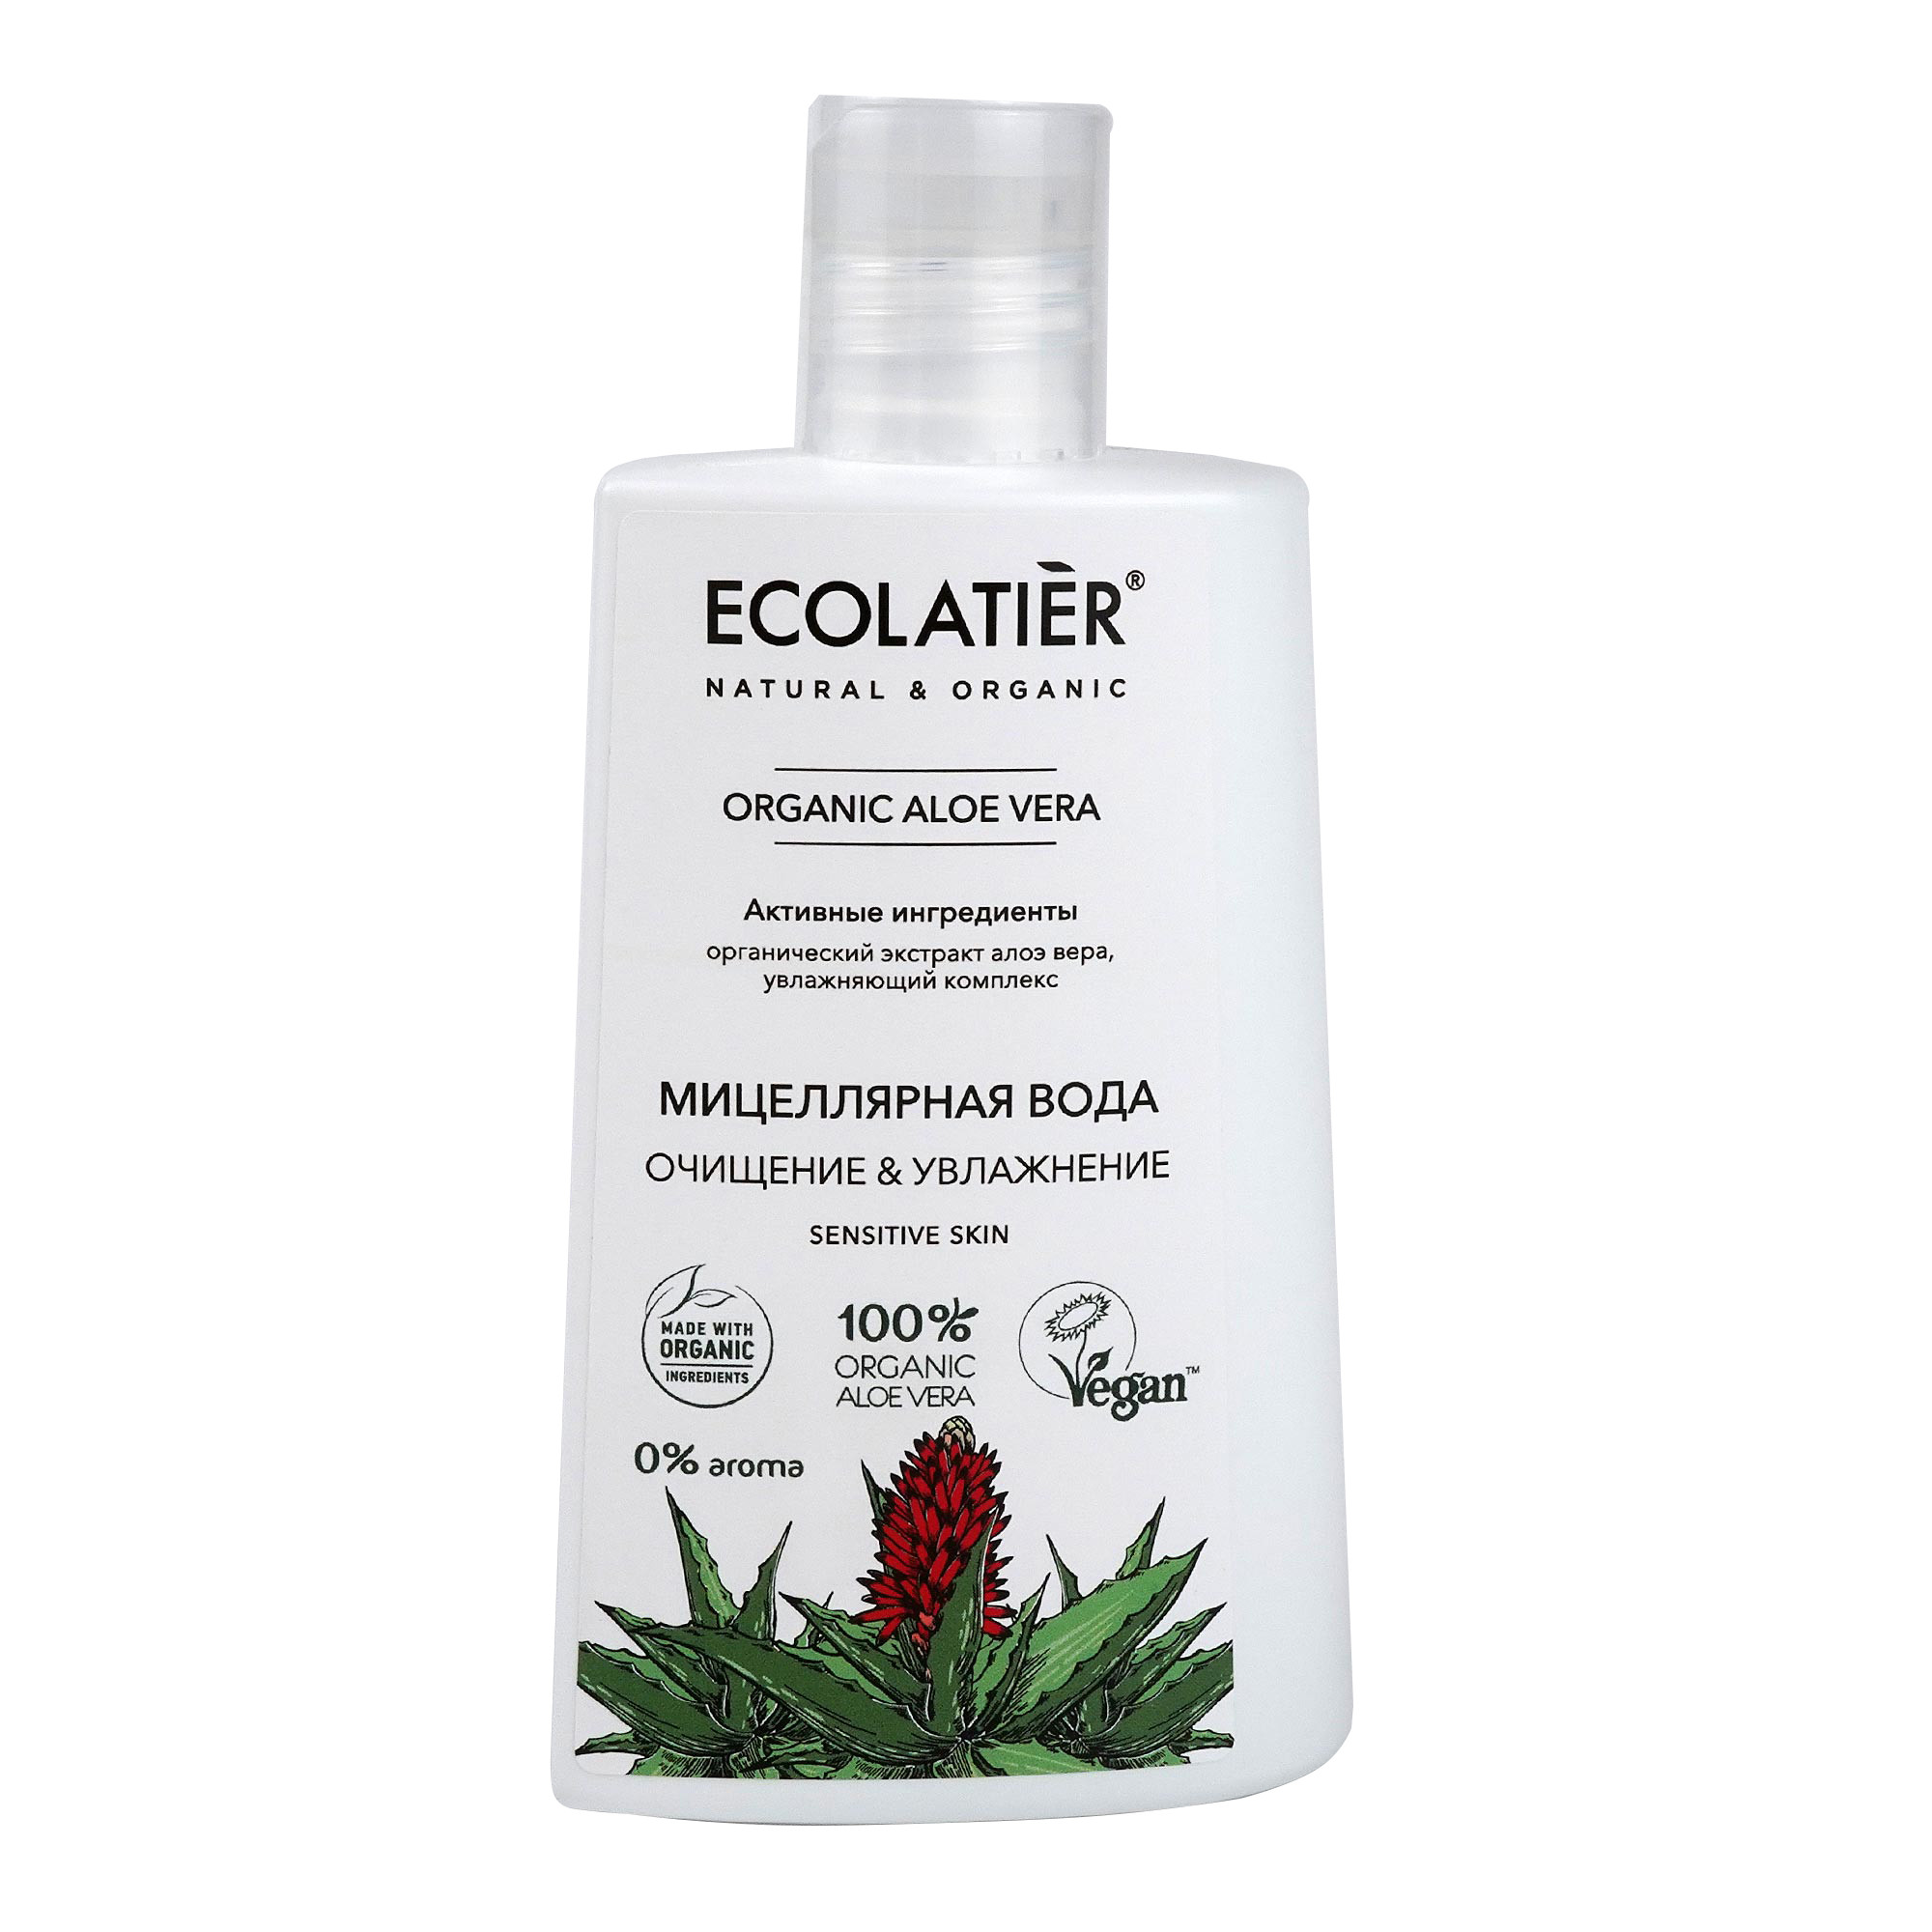 Купить Мицеллярная вода Green Очищение и увлажнение. Organic Aloe Vera, ECOLATIER, 250 мл